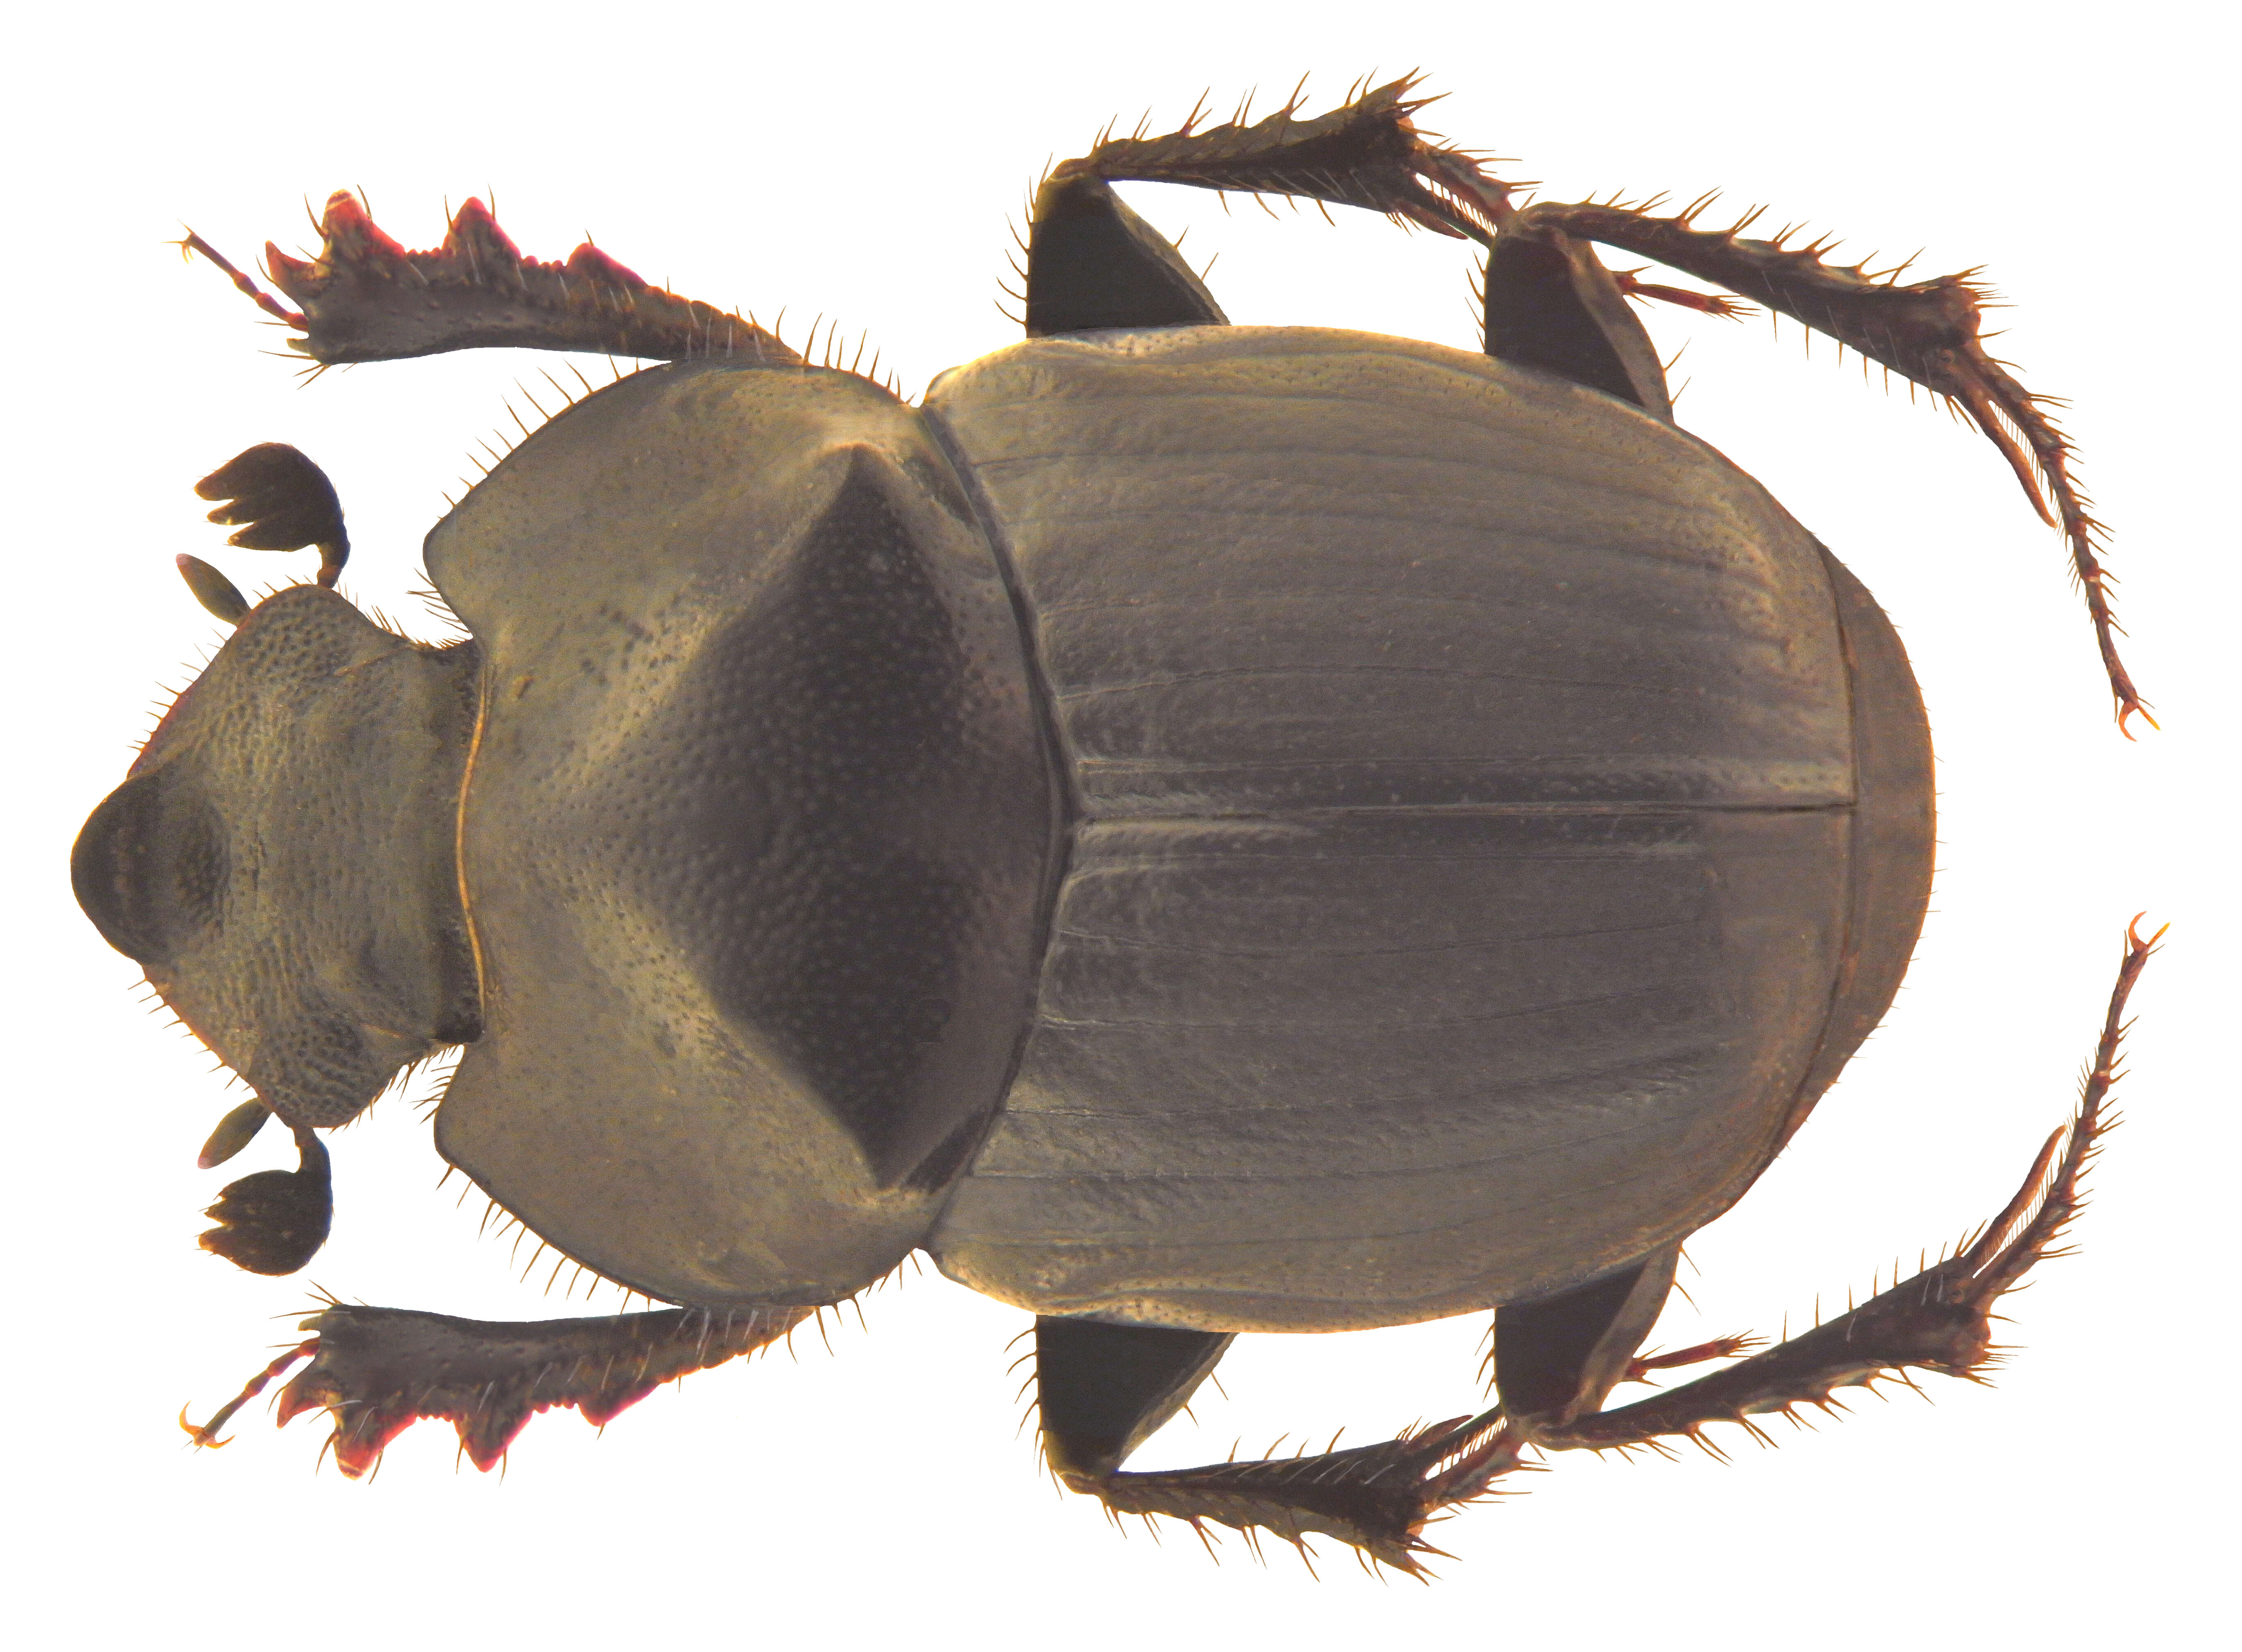 Image de Onthophagus (Phanaeomorphus) hingstoni Arrow 1931